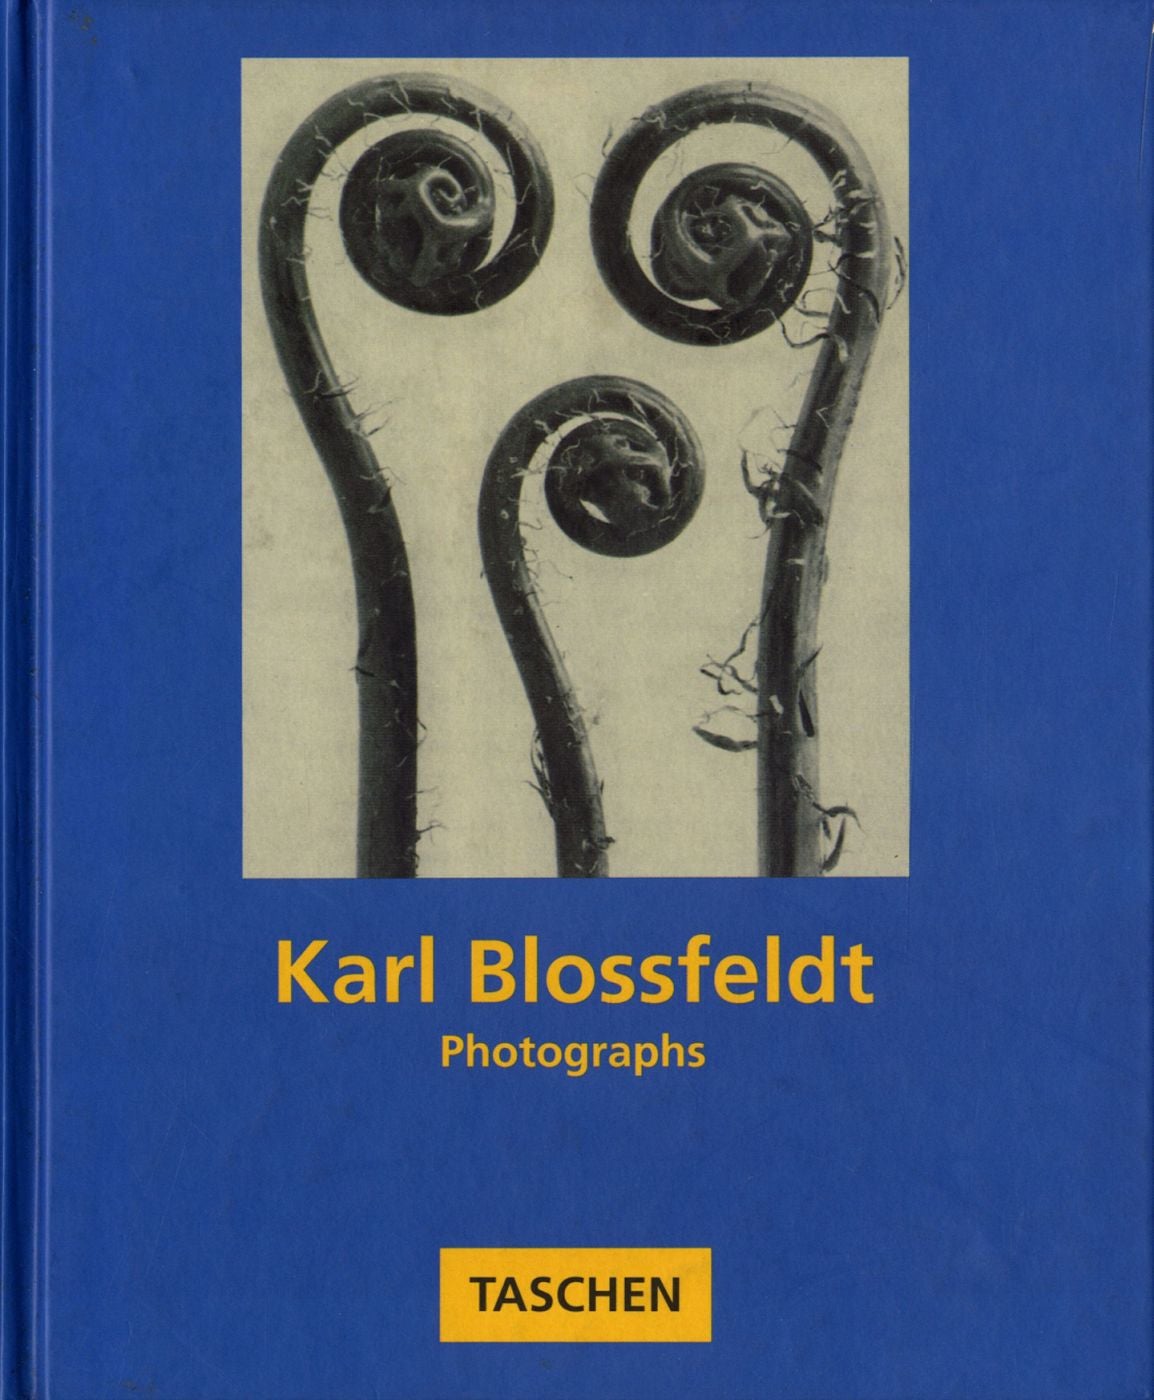 Karl Blossfeldt: Photographs (Taschen)